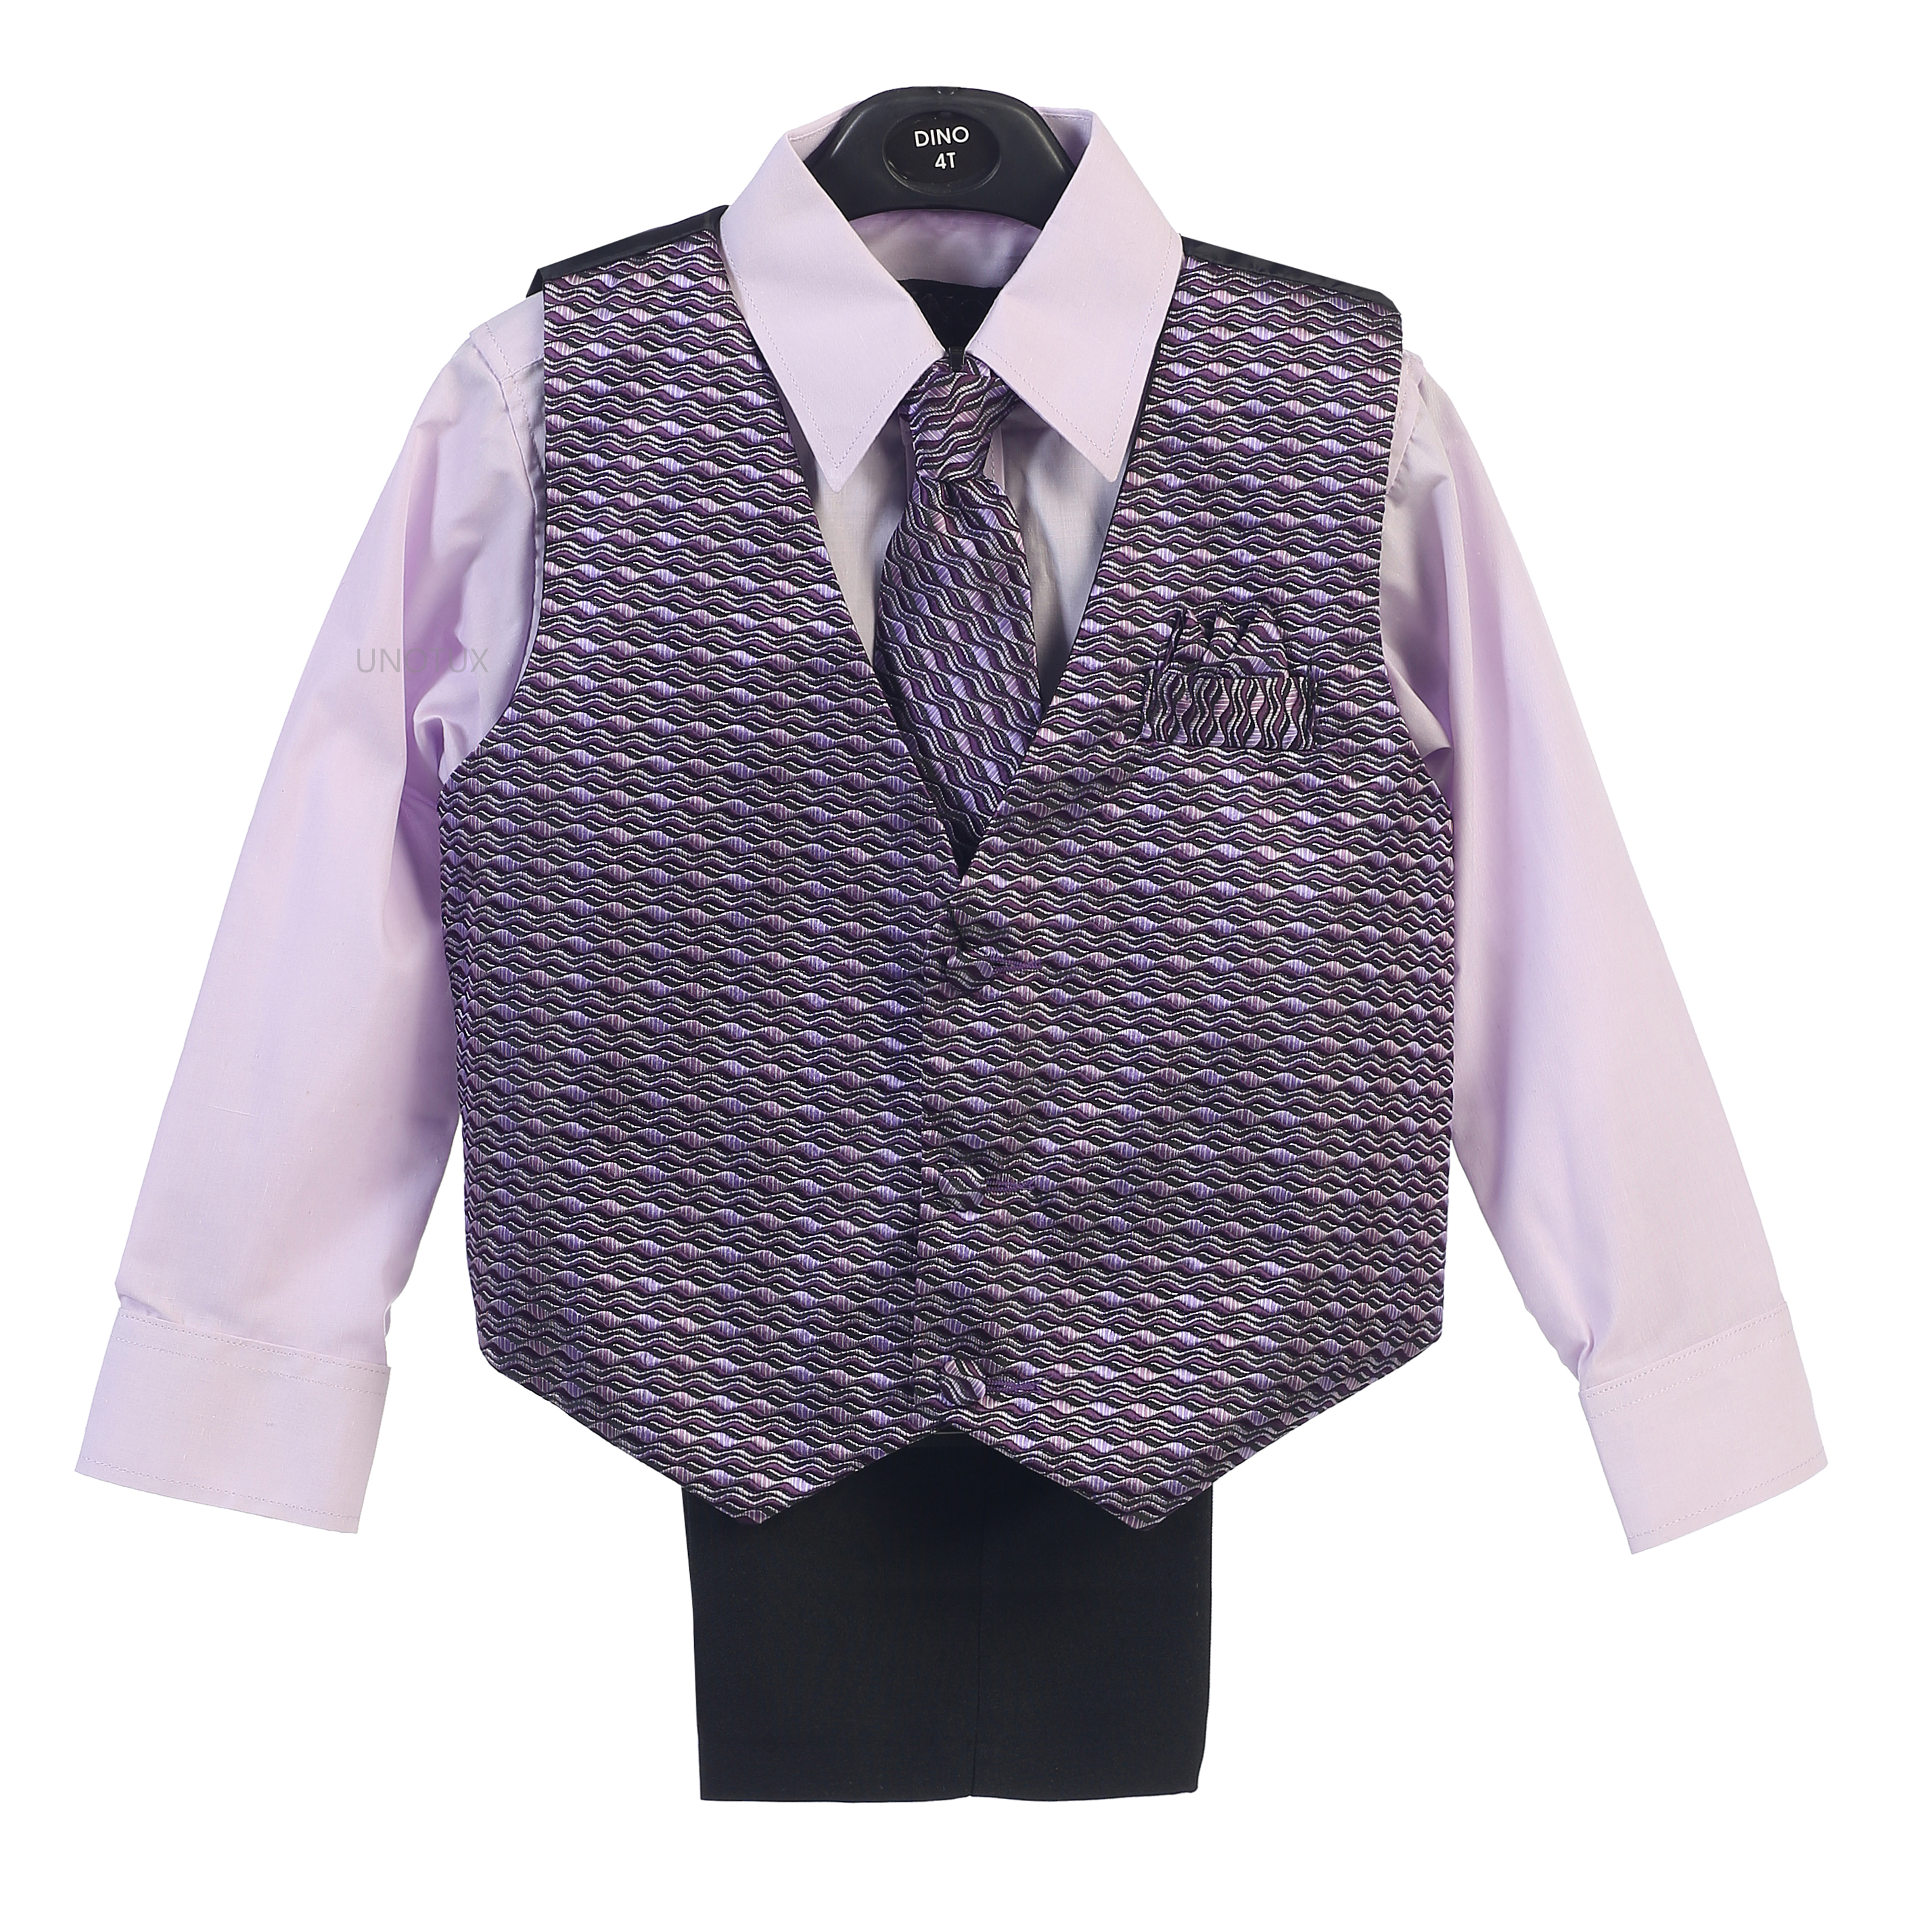 UnoTux 4pc Baby Toddler Boys Violet Formal Wedding Suits Vest Necktie Set Outfit 6M-4T